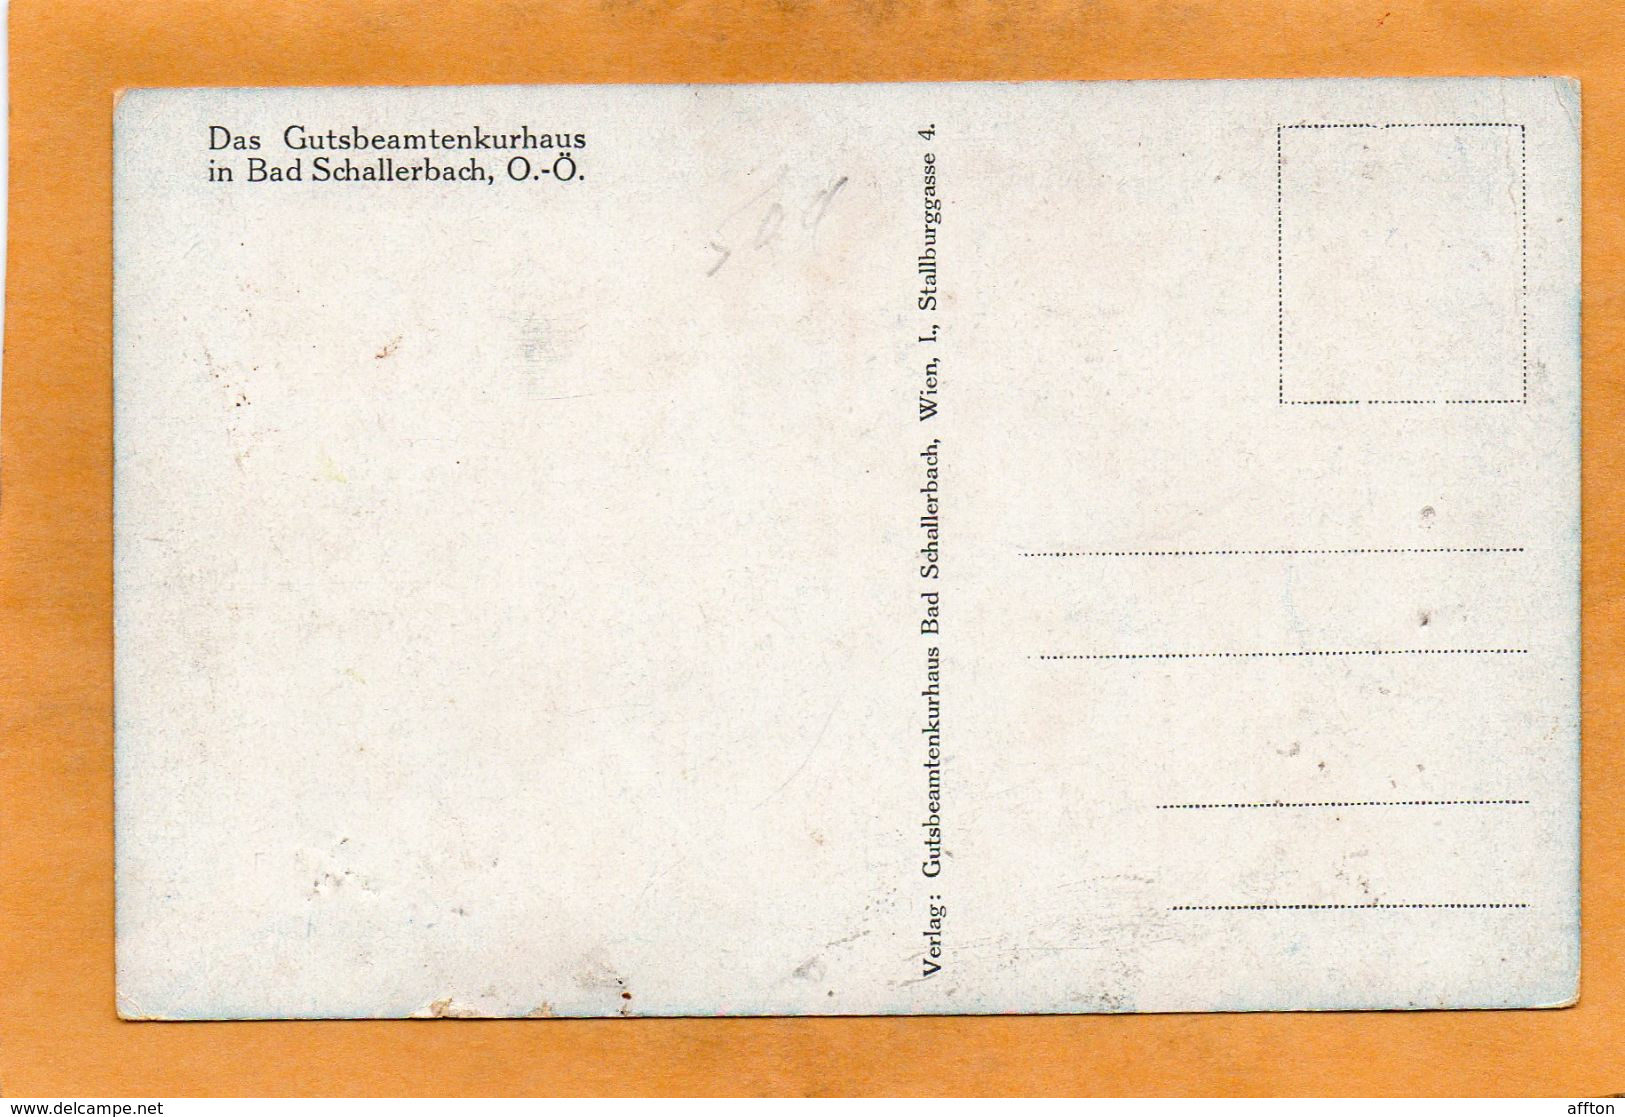 Bad Schallerbach 1910  Postcard - Bad Schallerbach